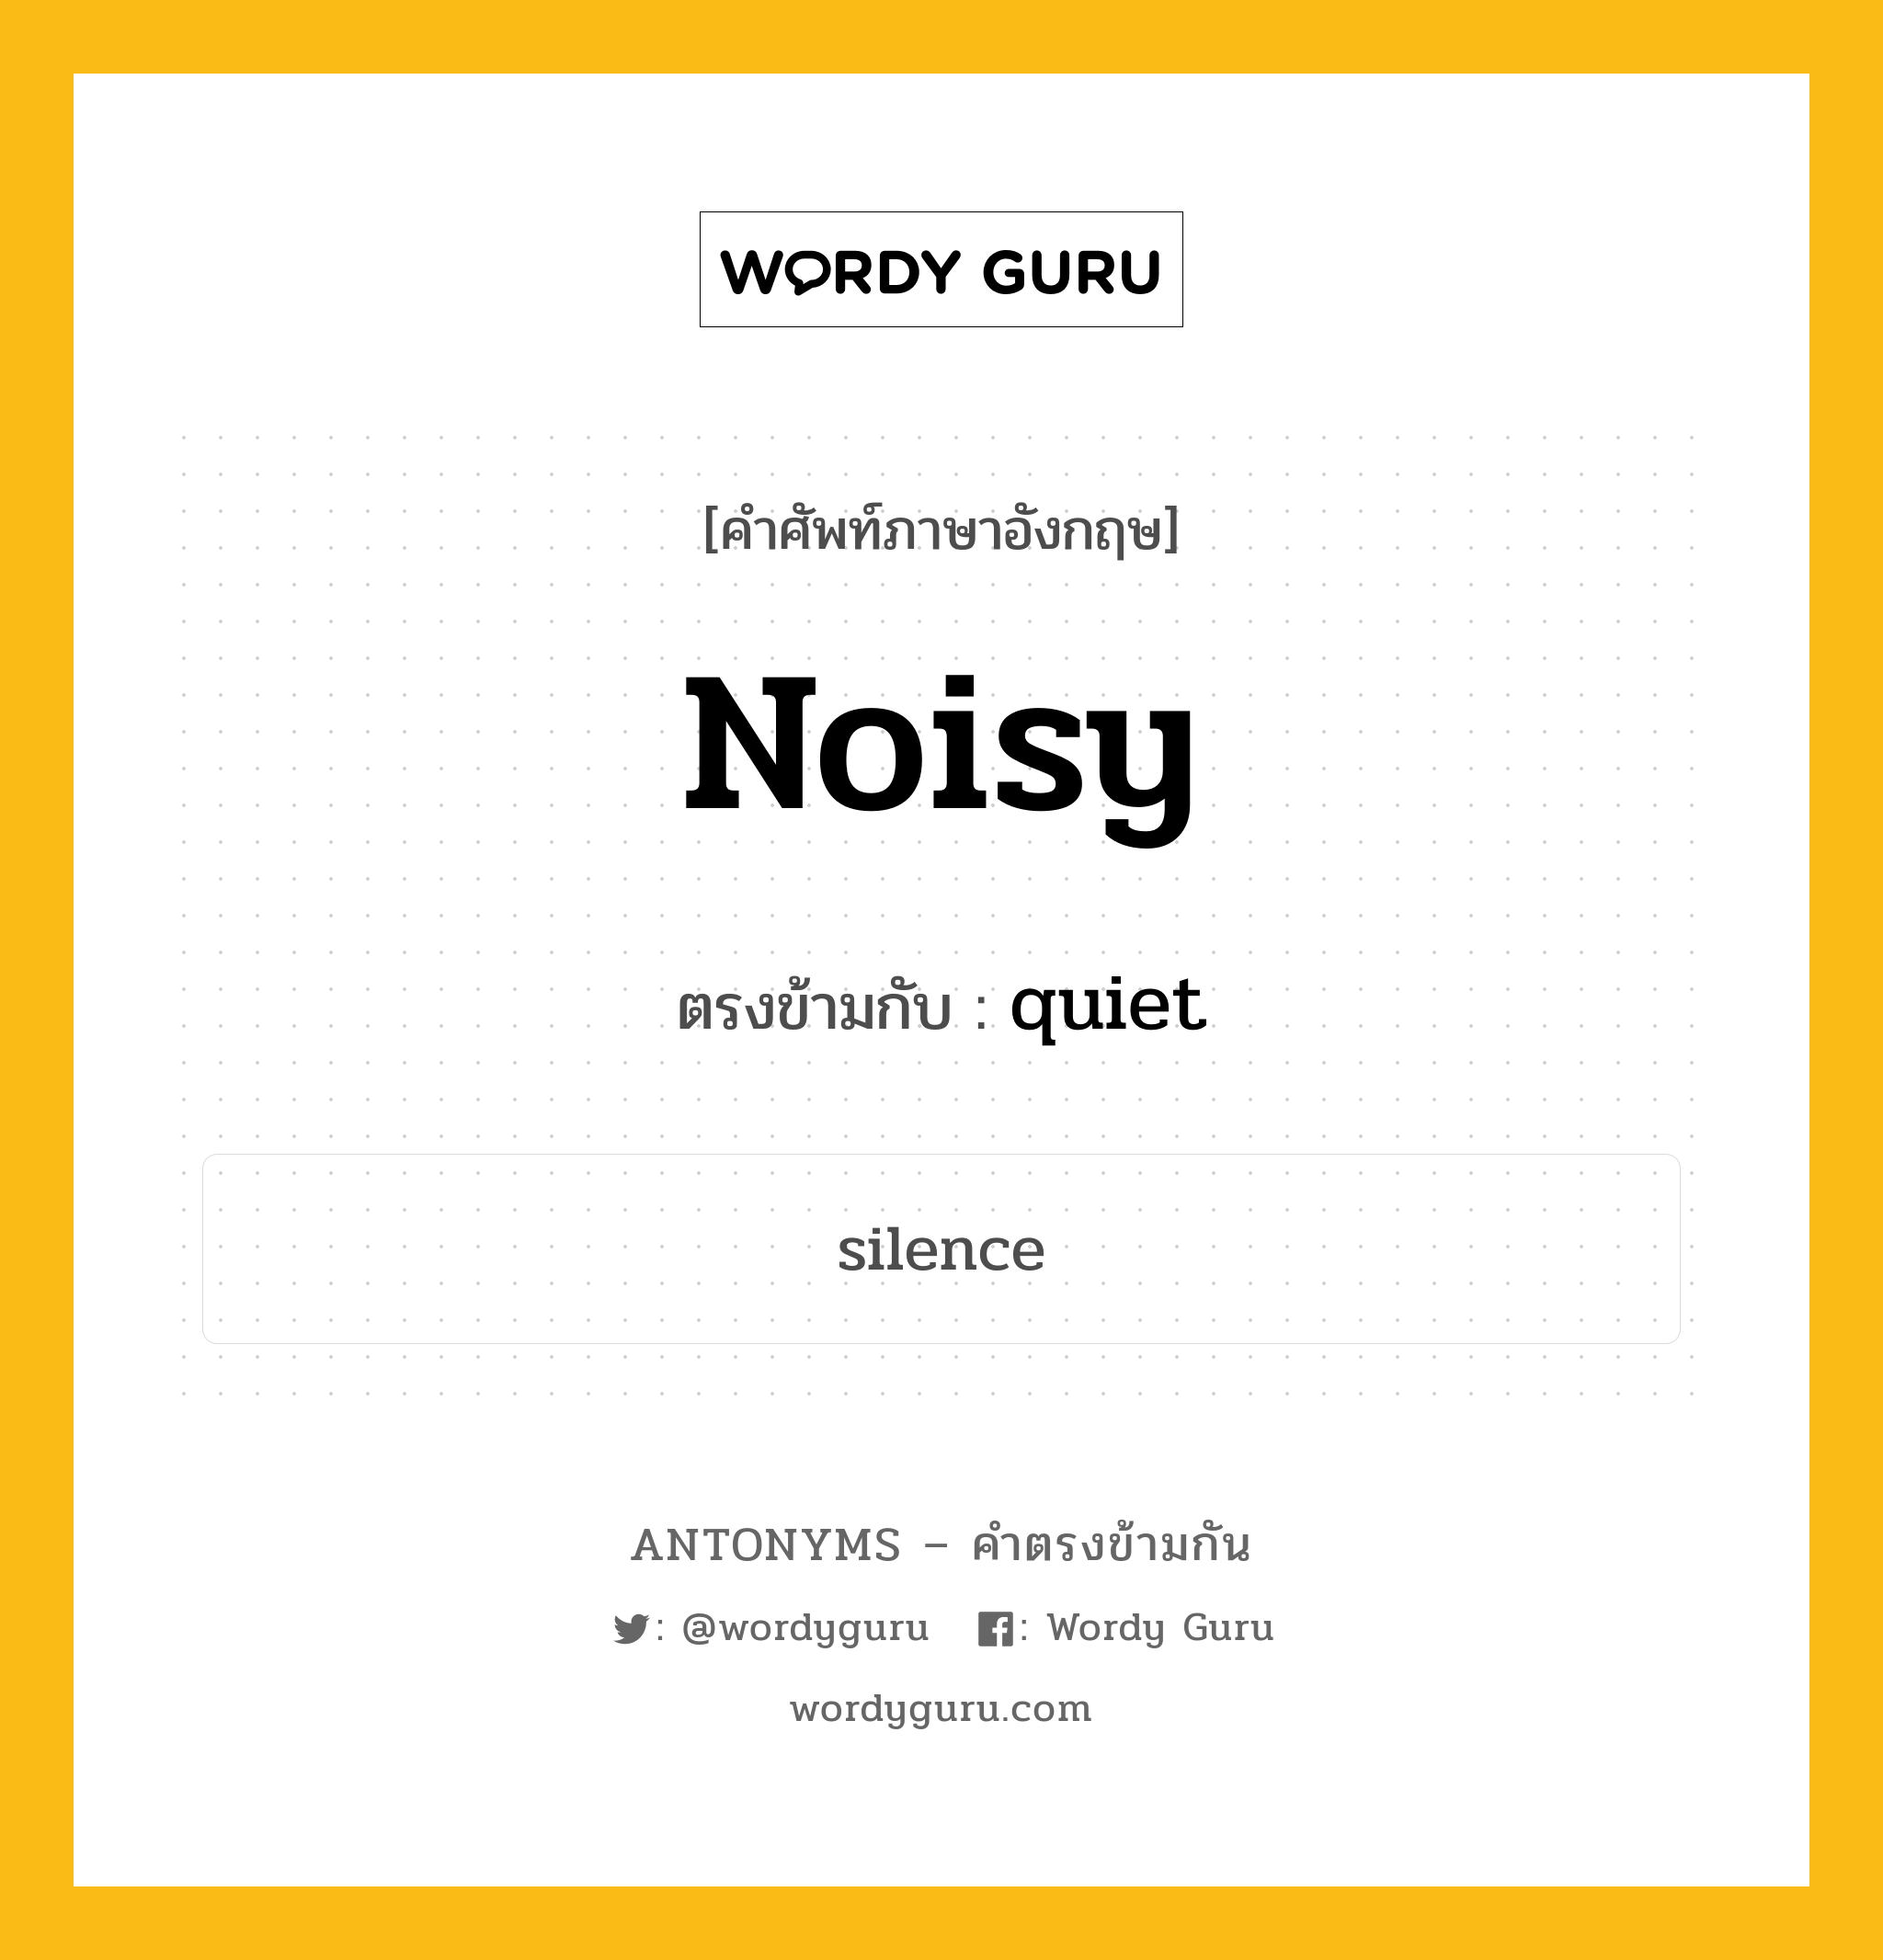 noisy เป็นคำตรงข้ามกับคำไหนบ้าง?, คำศัพท์ภาษาอังกฤษ noisy ตรงข้ามกับ quiet หมวด quiet